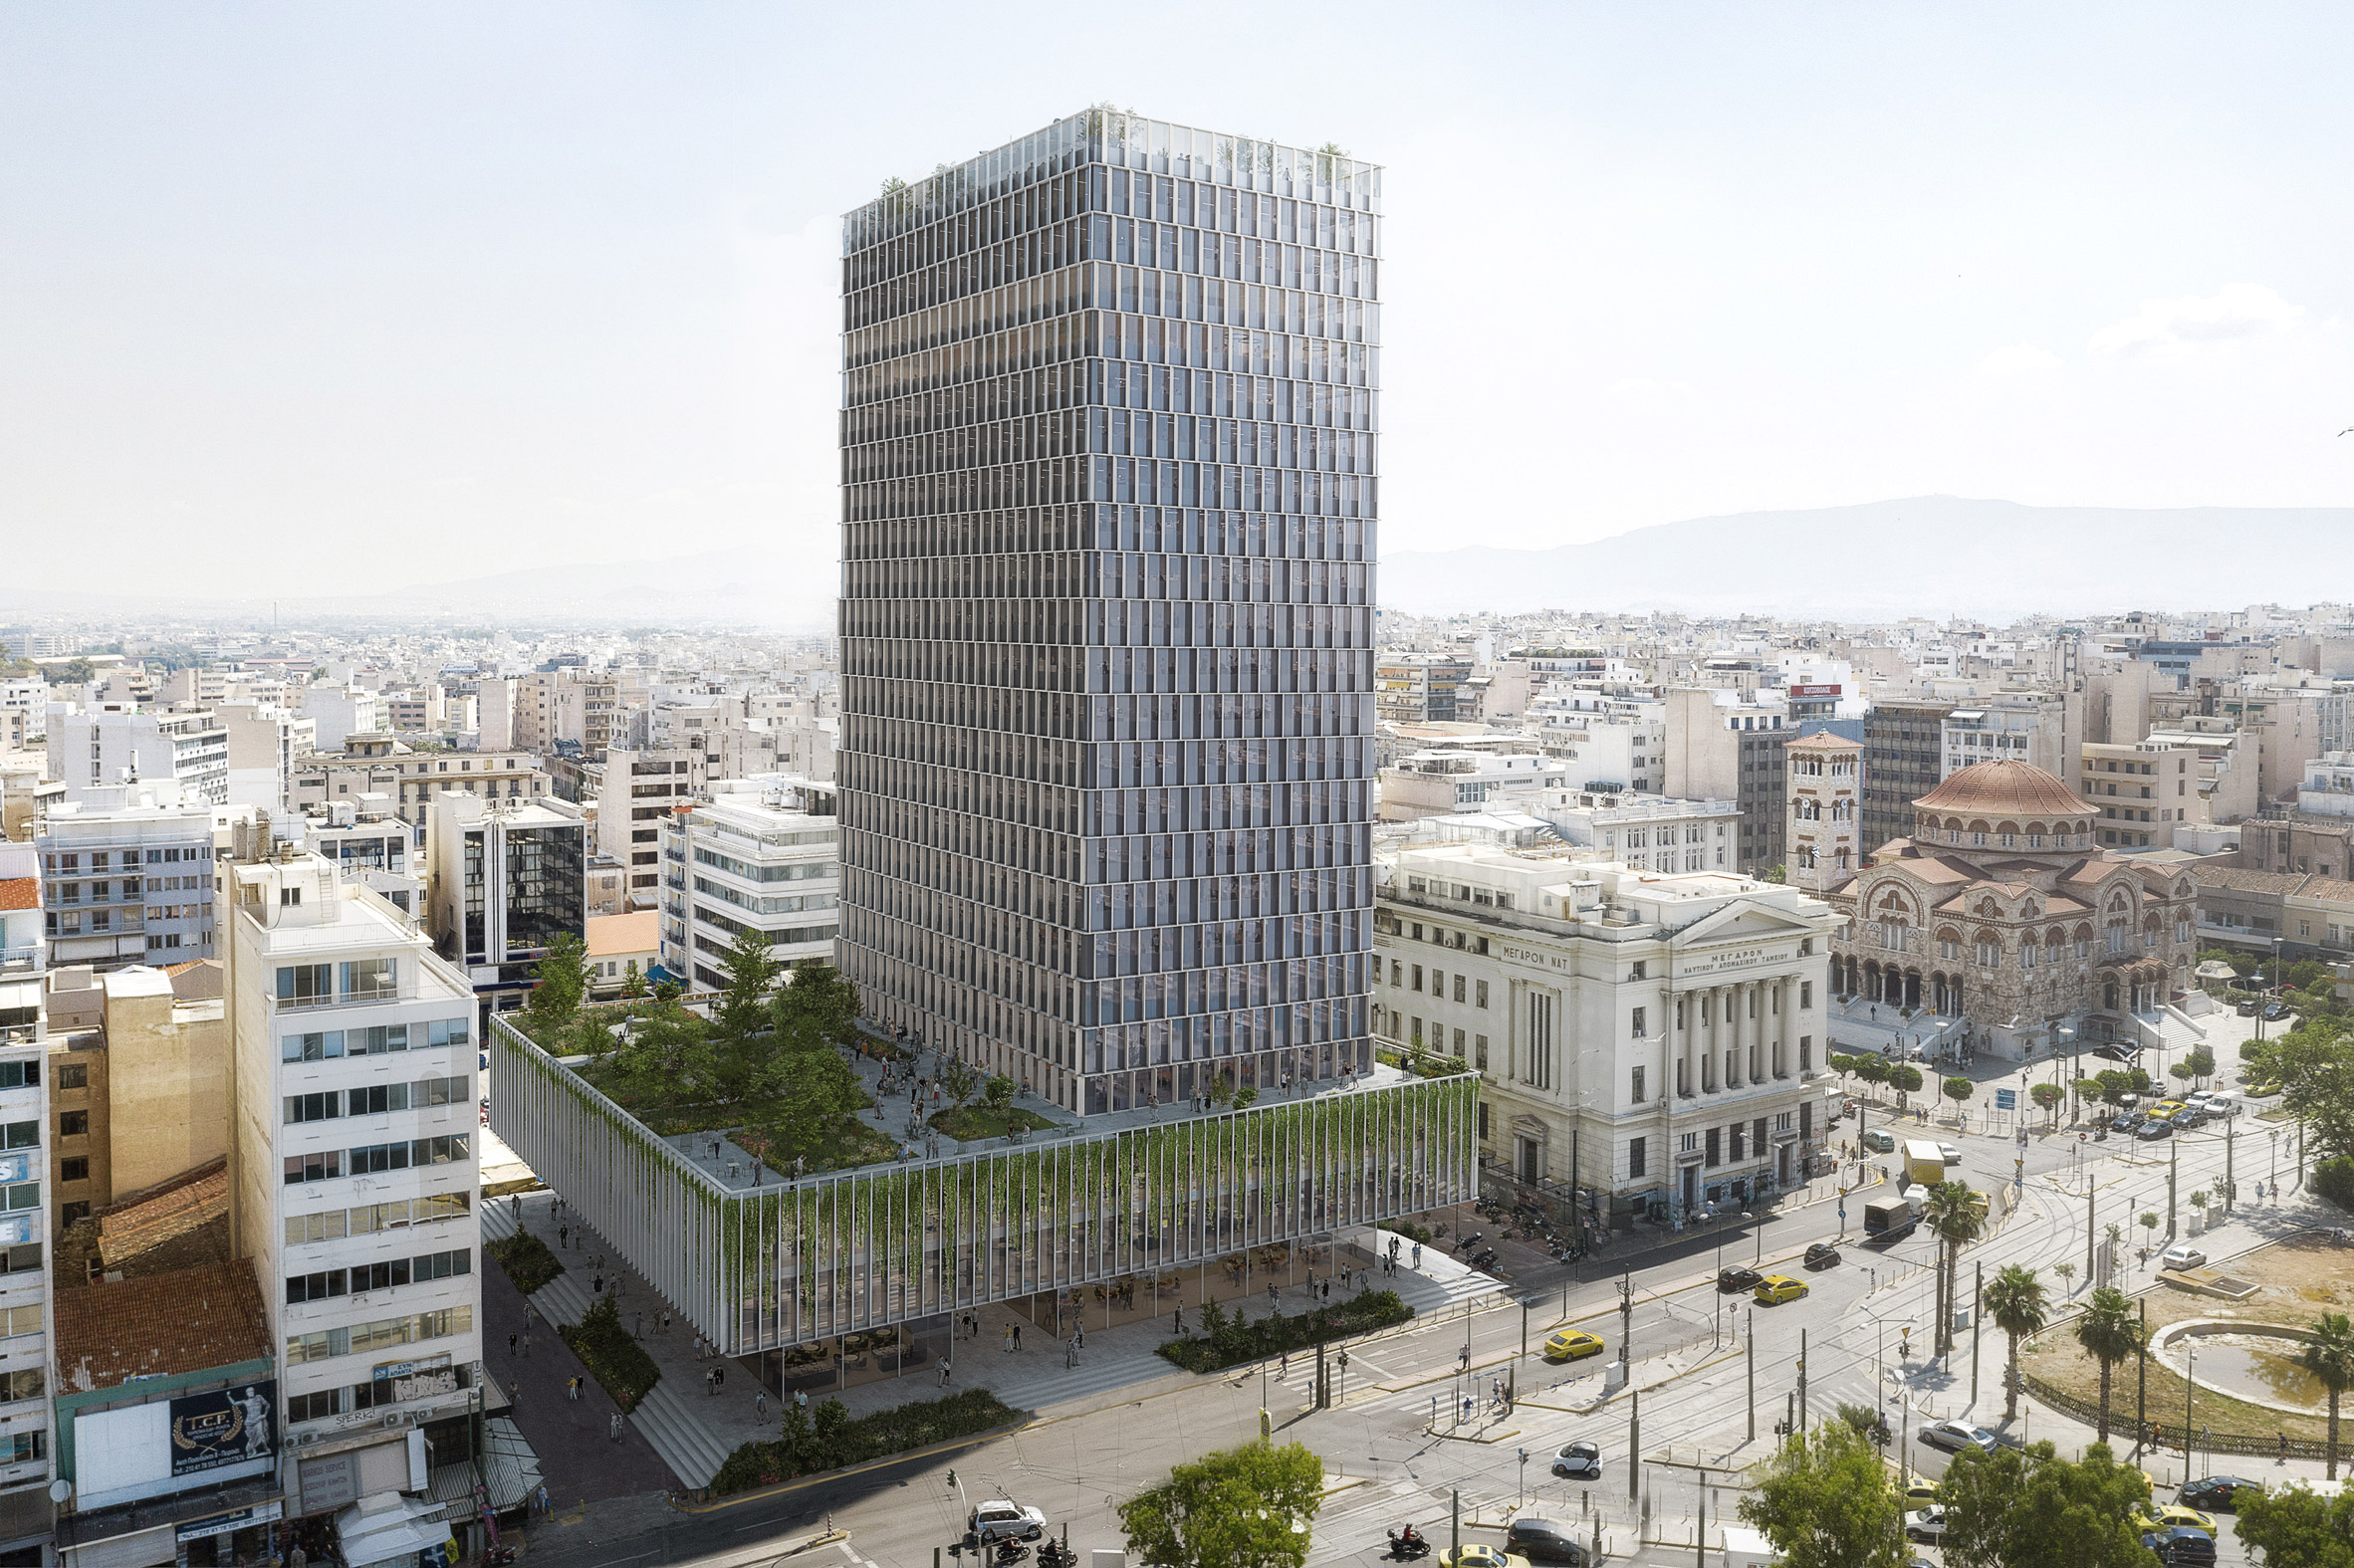 PILA designs facades to rejuvenate Greece's long-abandoned Piraeus Tower